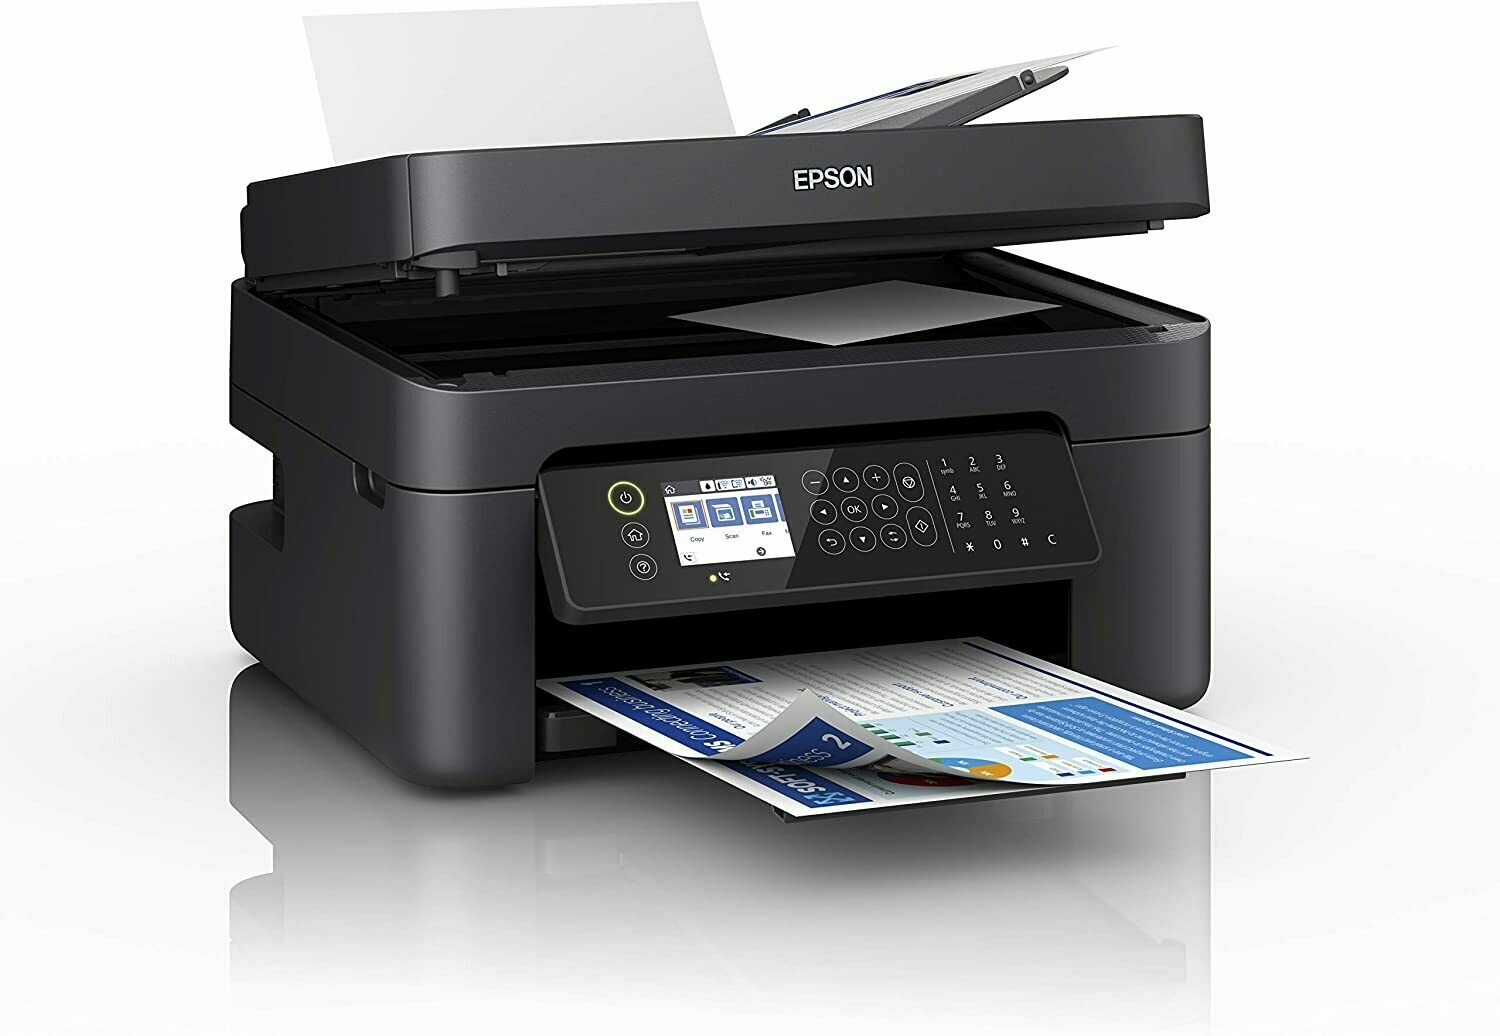 Epson WorkForce WF-2840DWF Print/Scan/Copy/Fax Wi-Fi Printer with ADF, Black